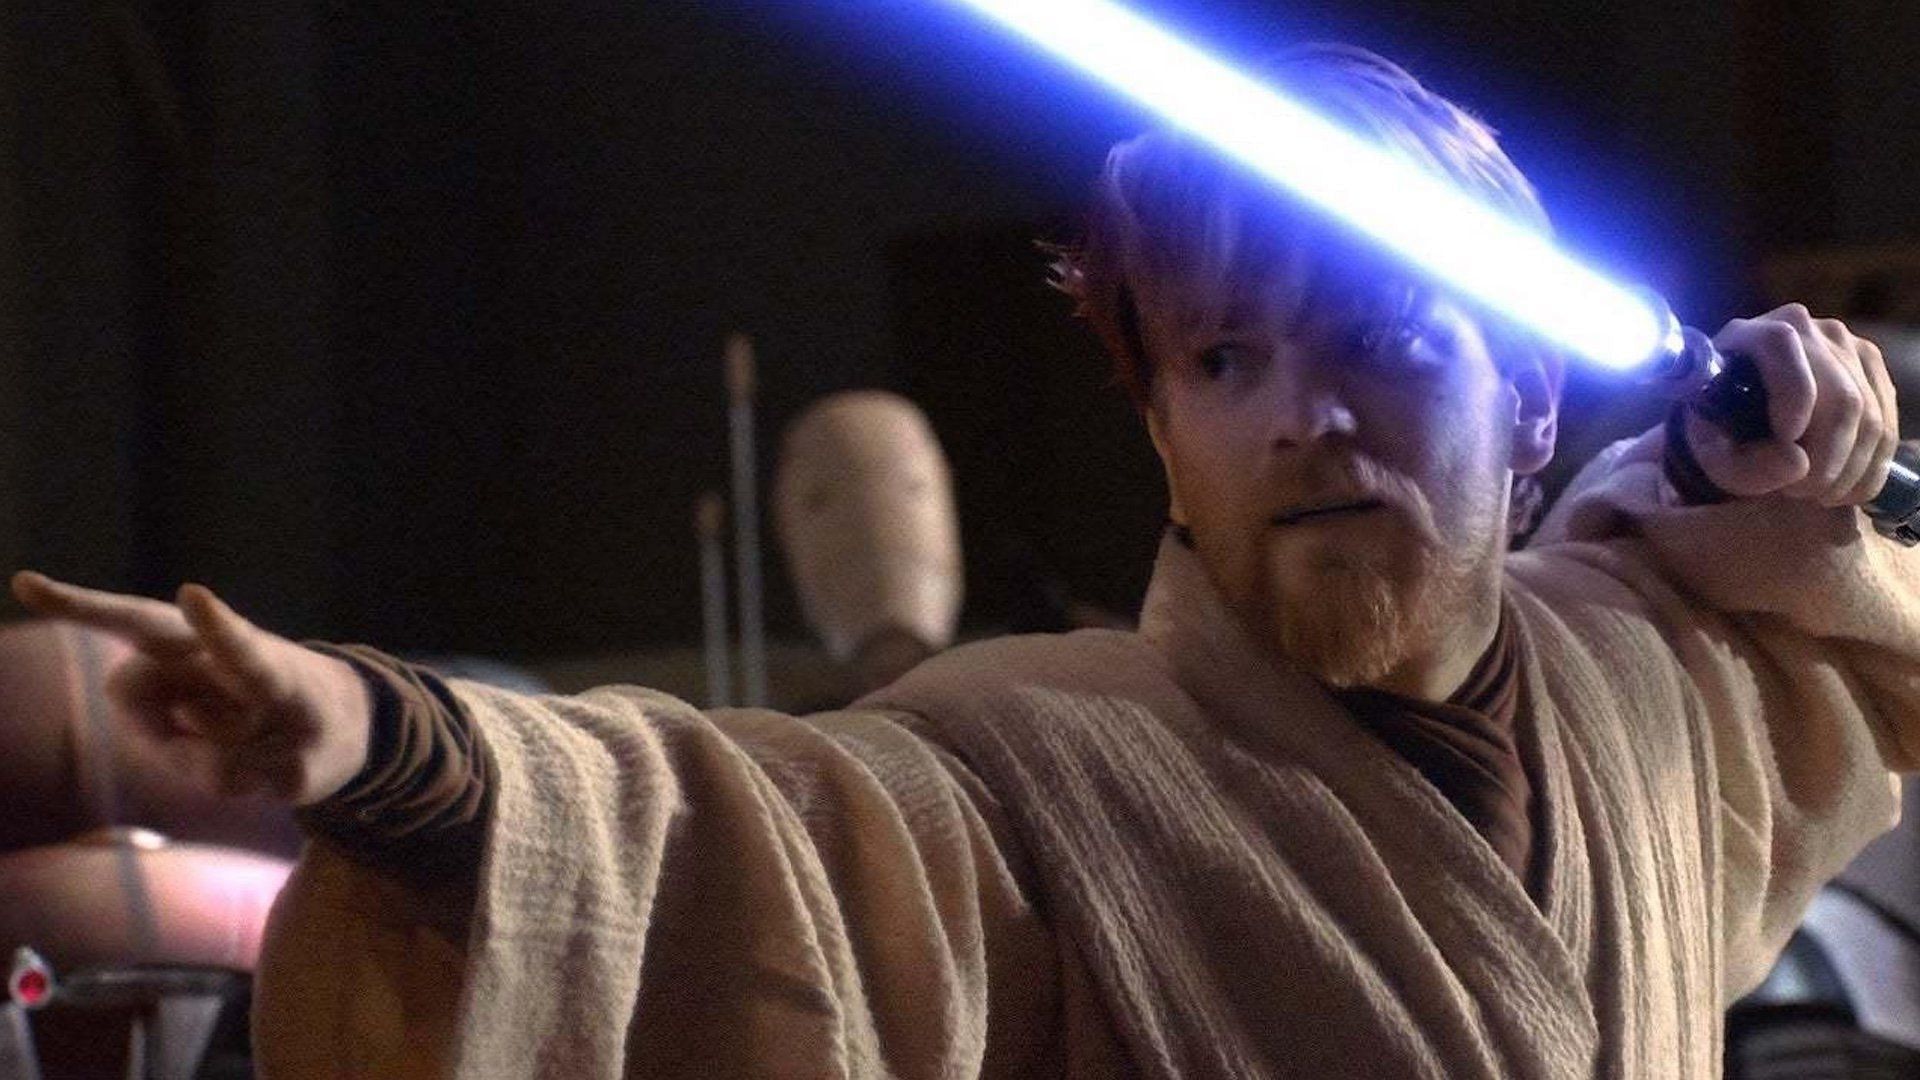 Ewan McGregor as Obi-Wan Kenobi in the &#039;Star Wars saga (Image via Lucasfilm)